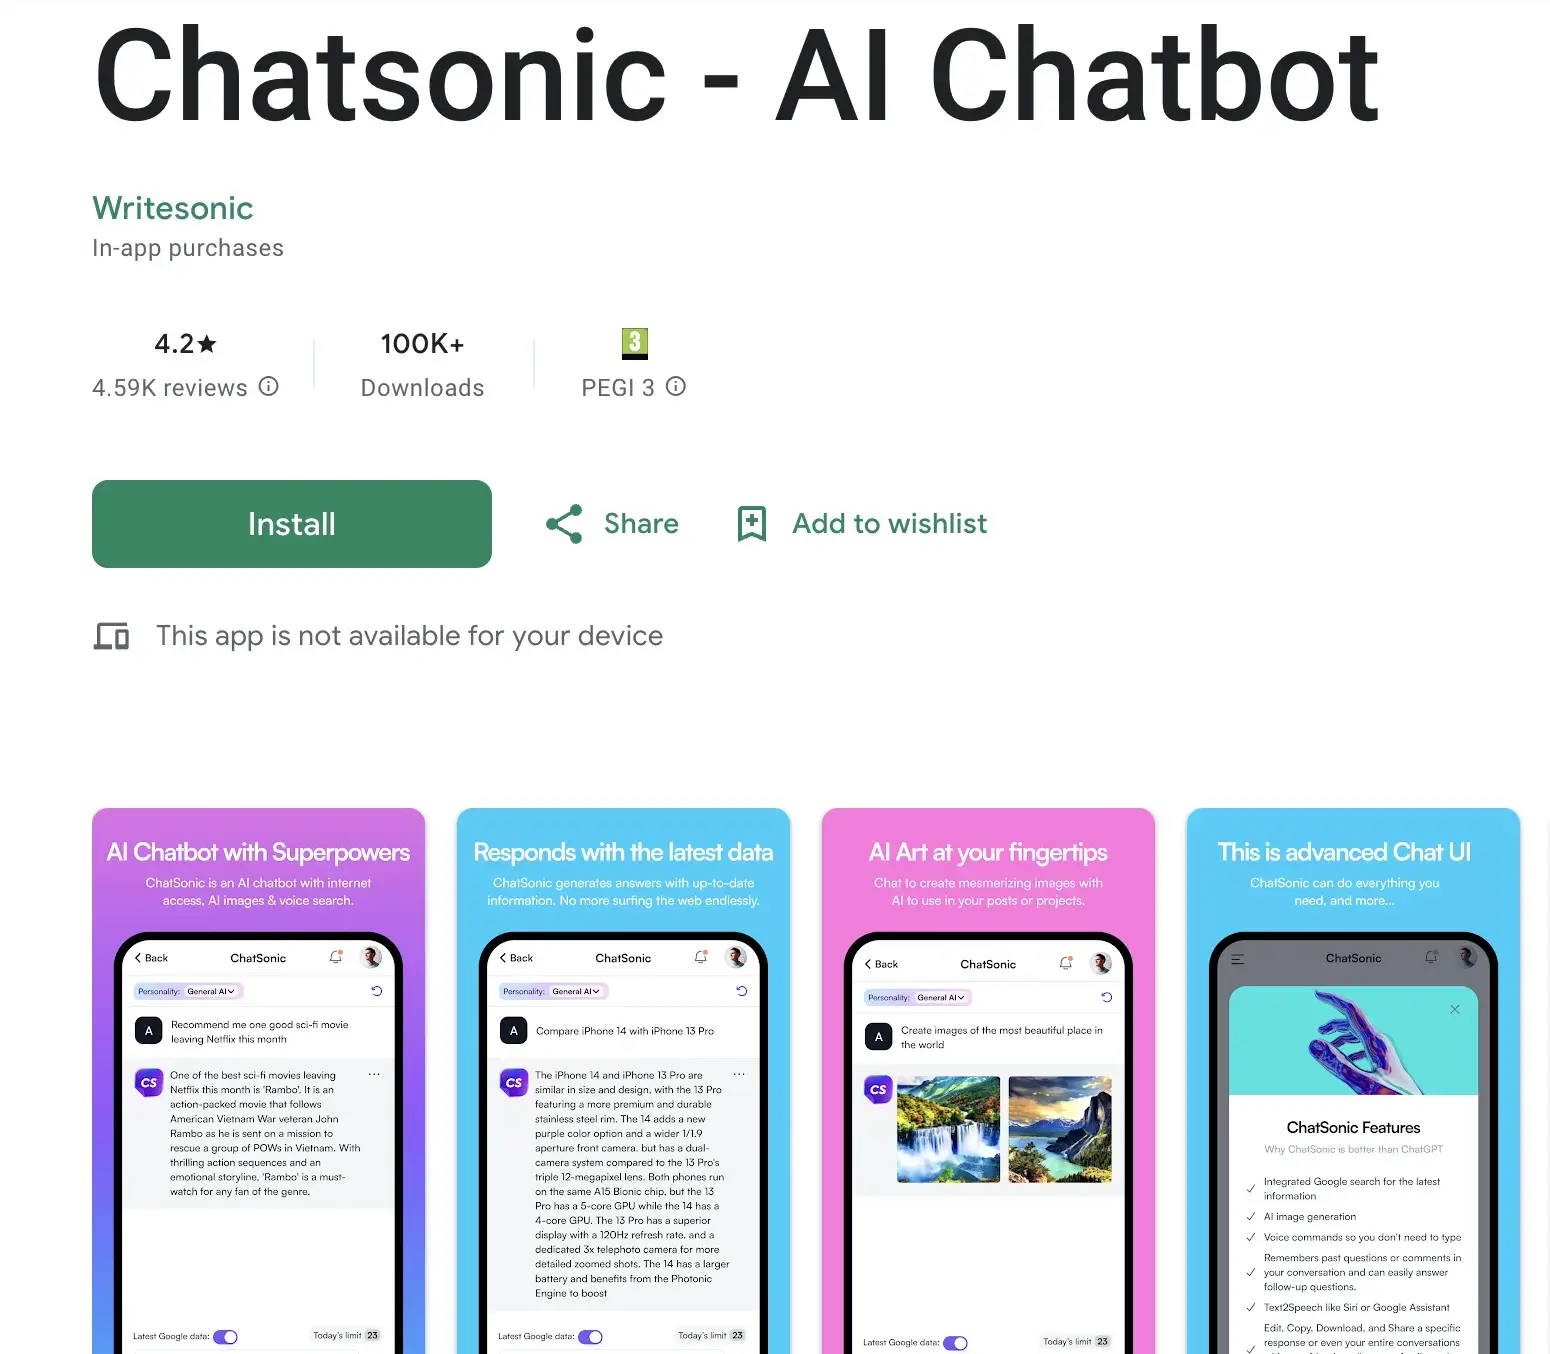 4. Chatsonic - AI Chatbot